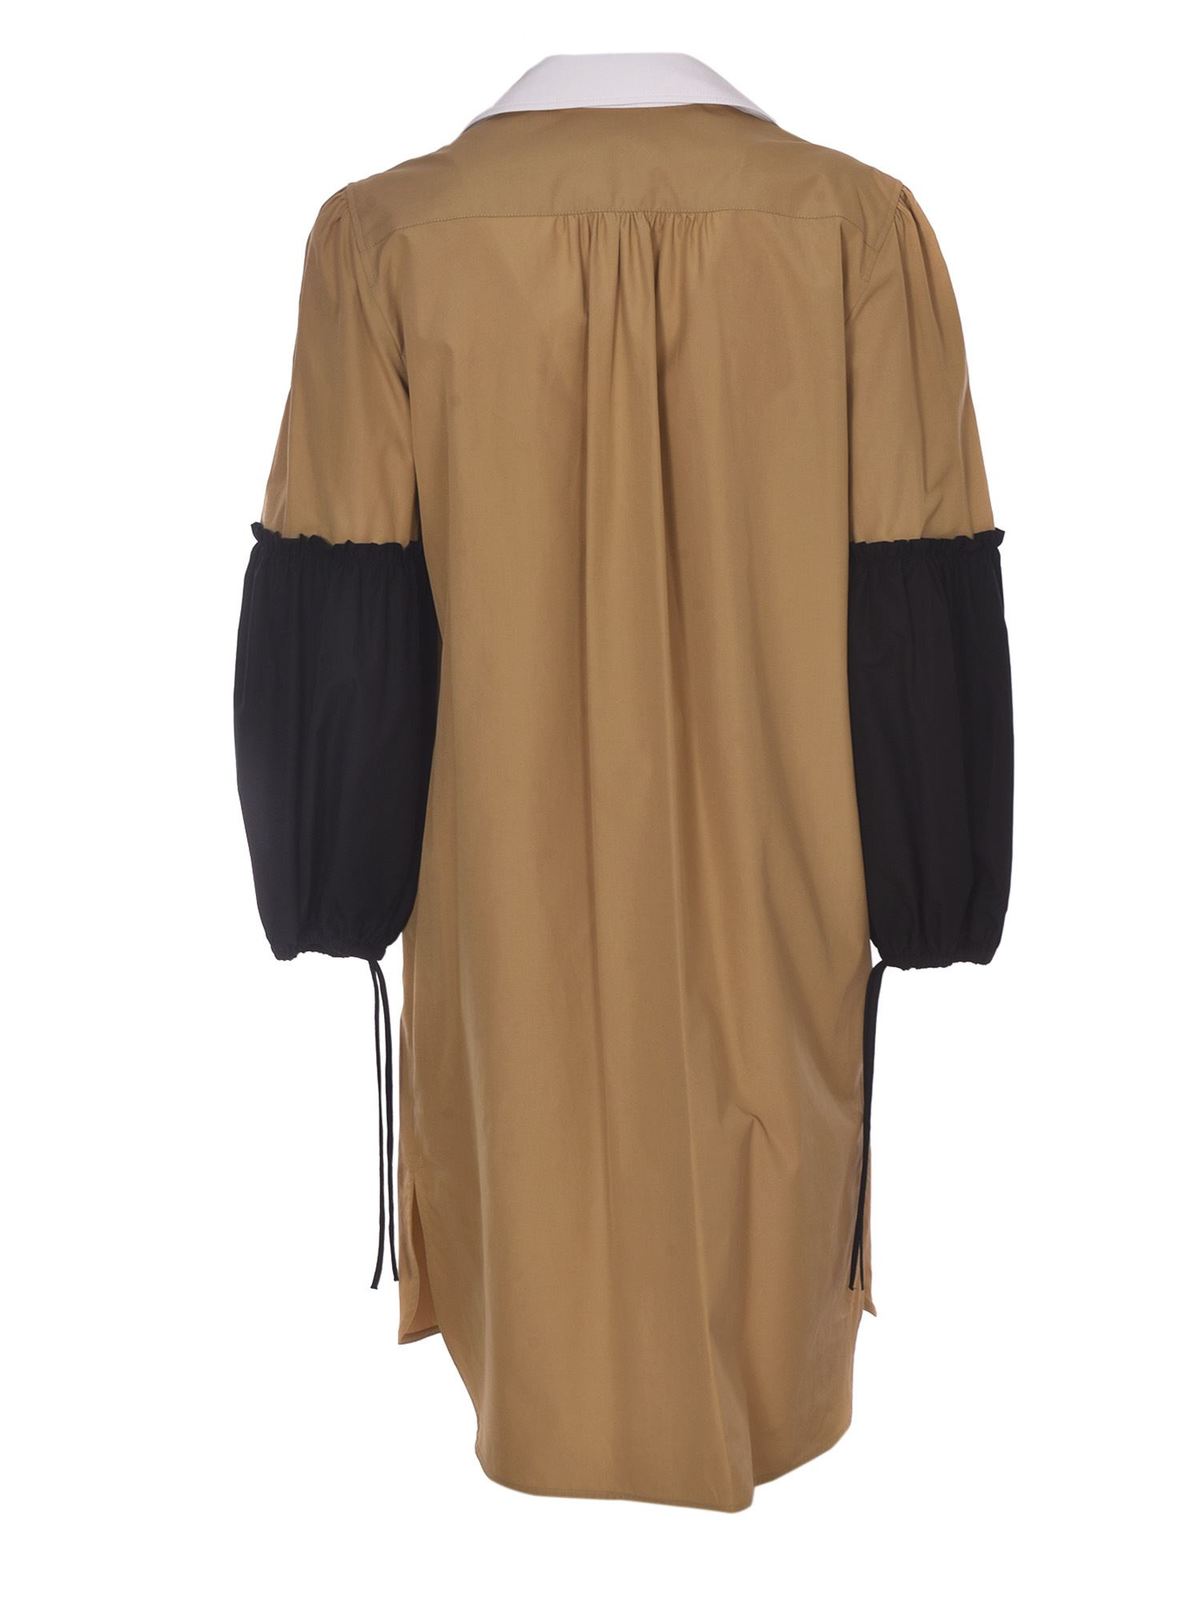 Knee length dresses Max Mara - Fornovo dress in camel color